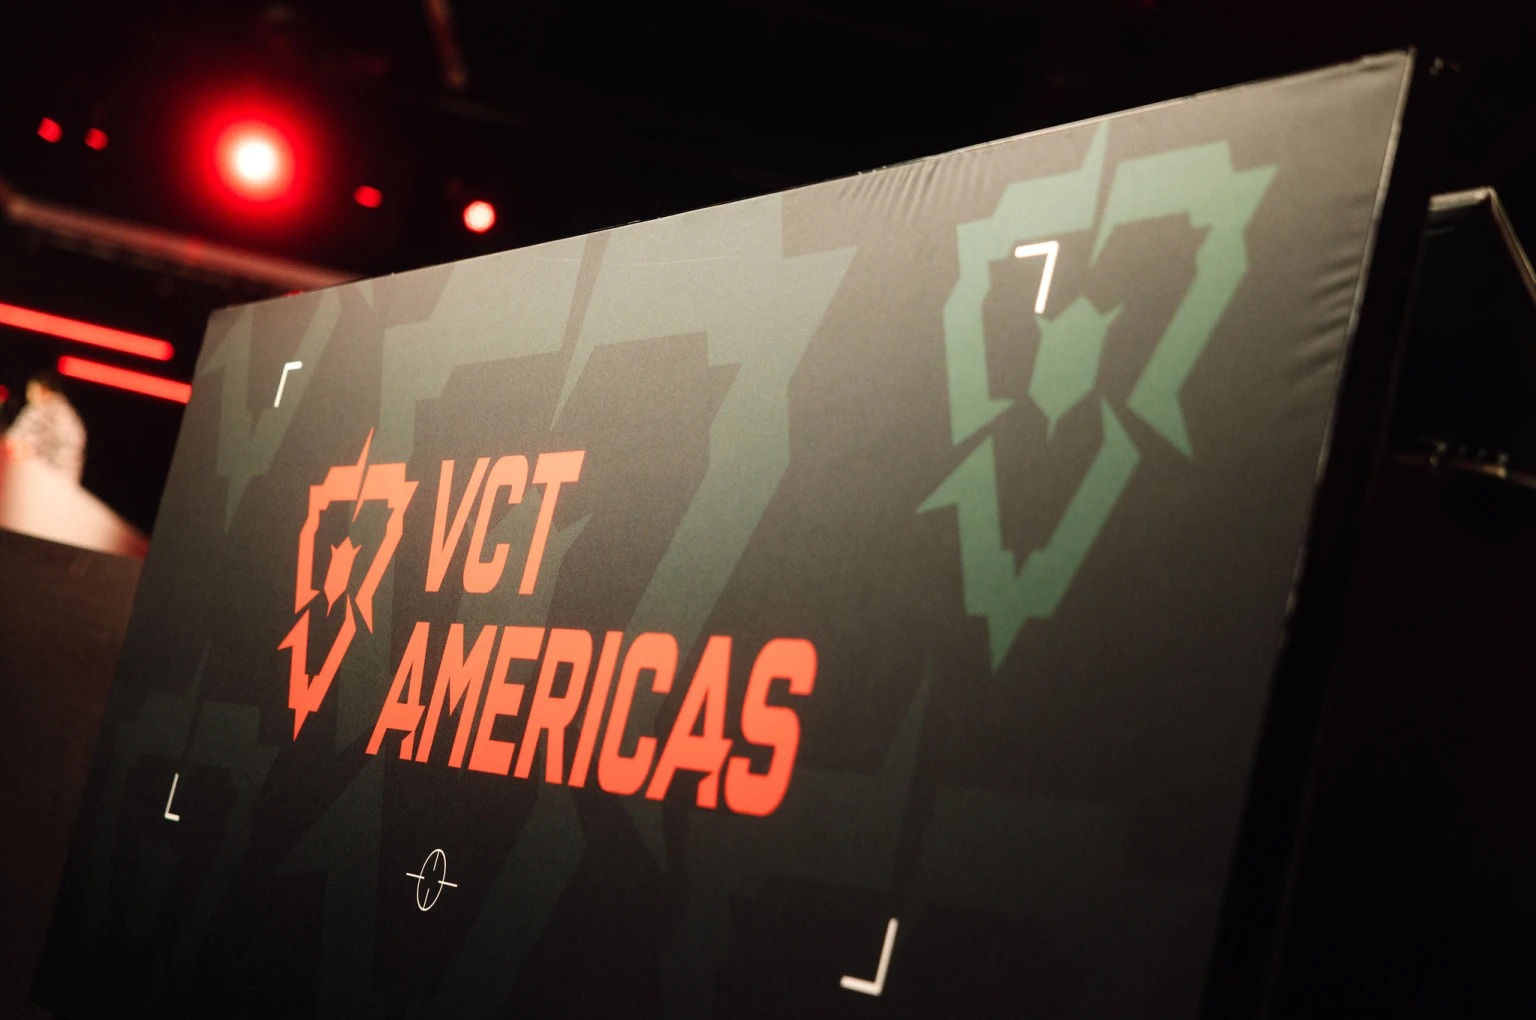 Những điểm đáng chú ý nhất trong tuần thi đấu đầu tiên của VCT Americas 2023